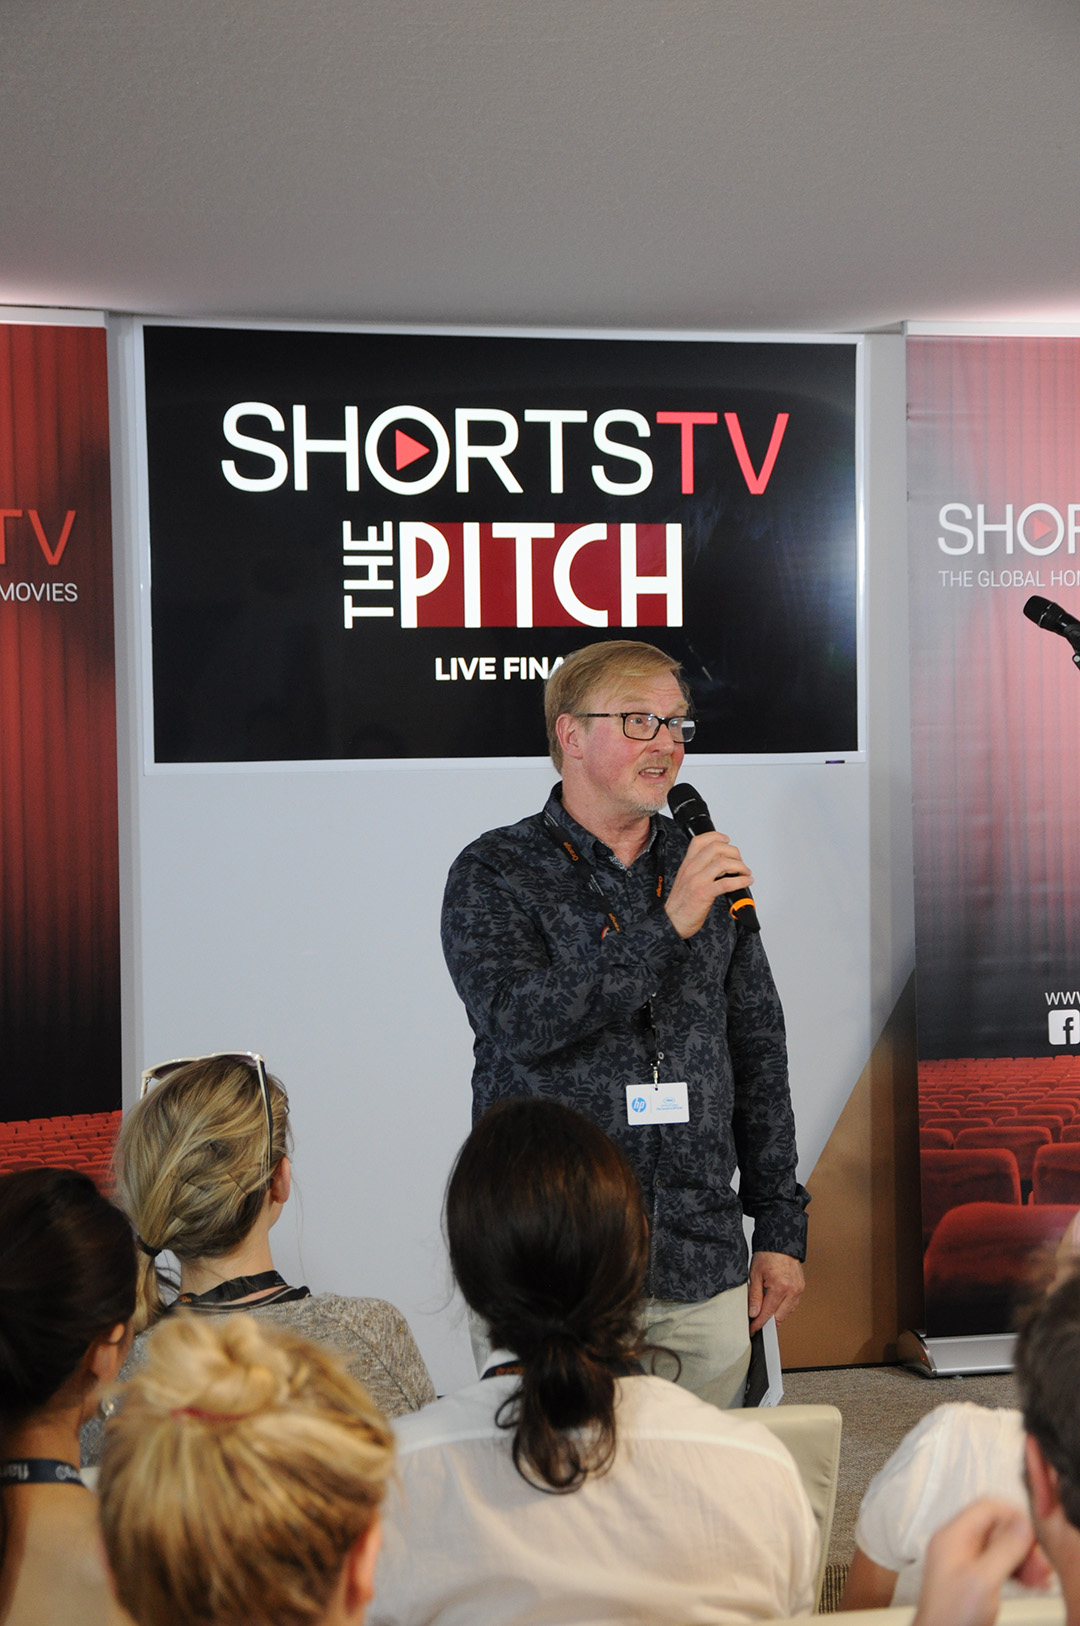 ShortsTV CEO, Carter Pilcher